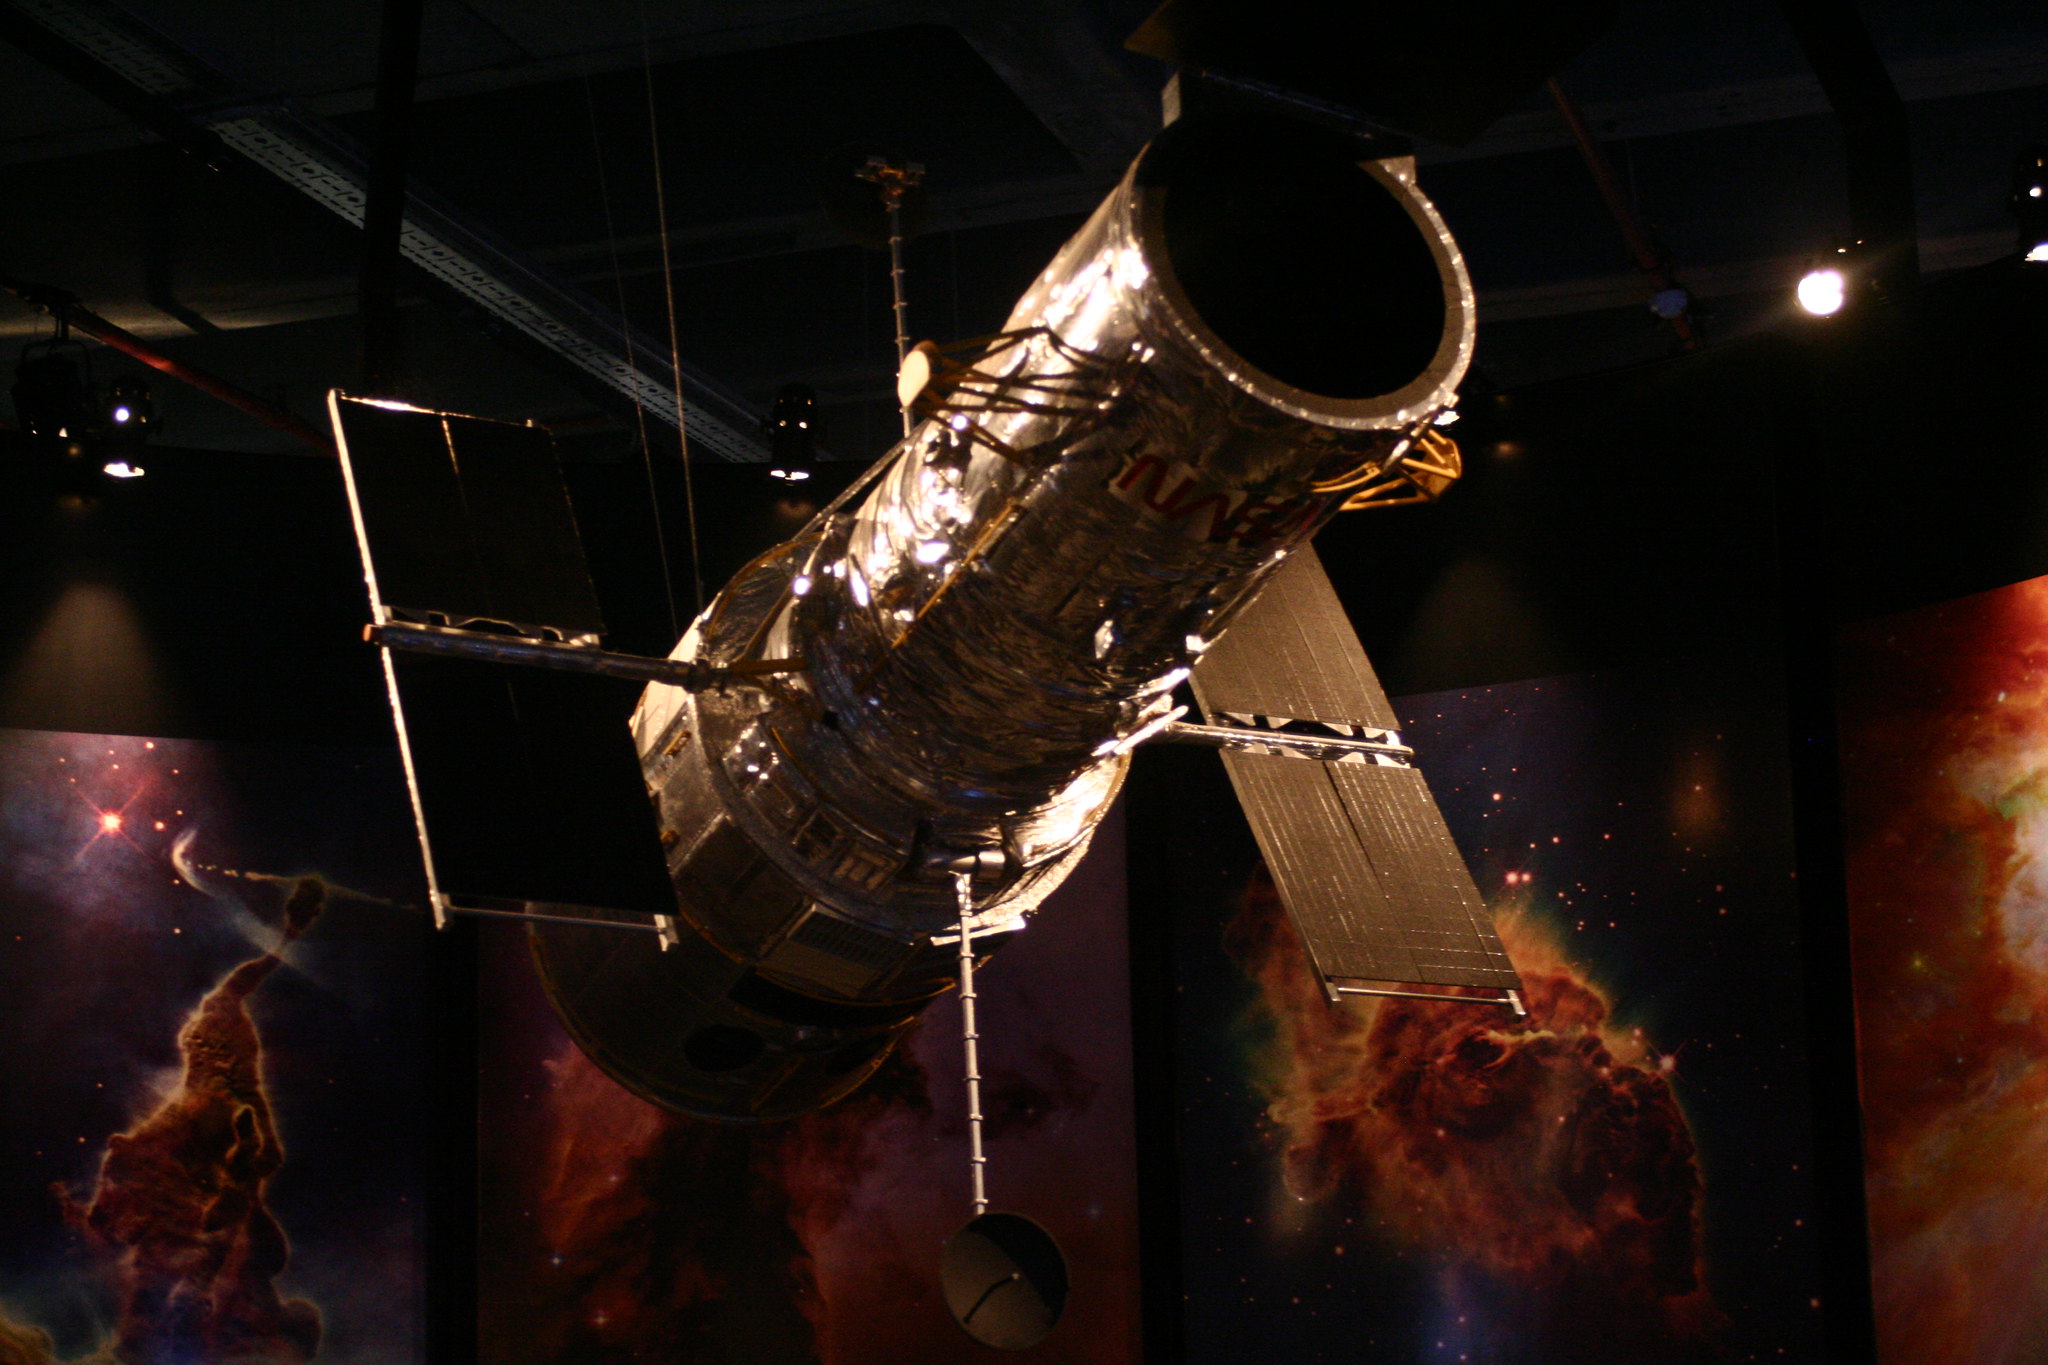 NASA Exhibition